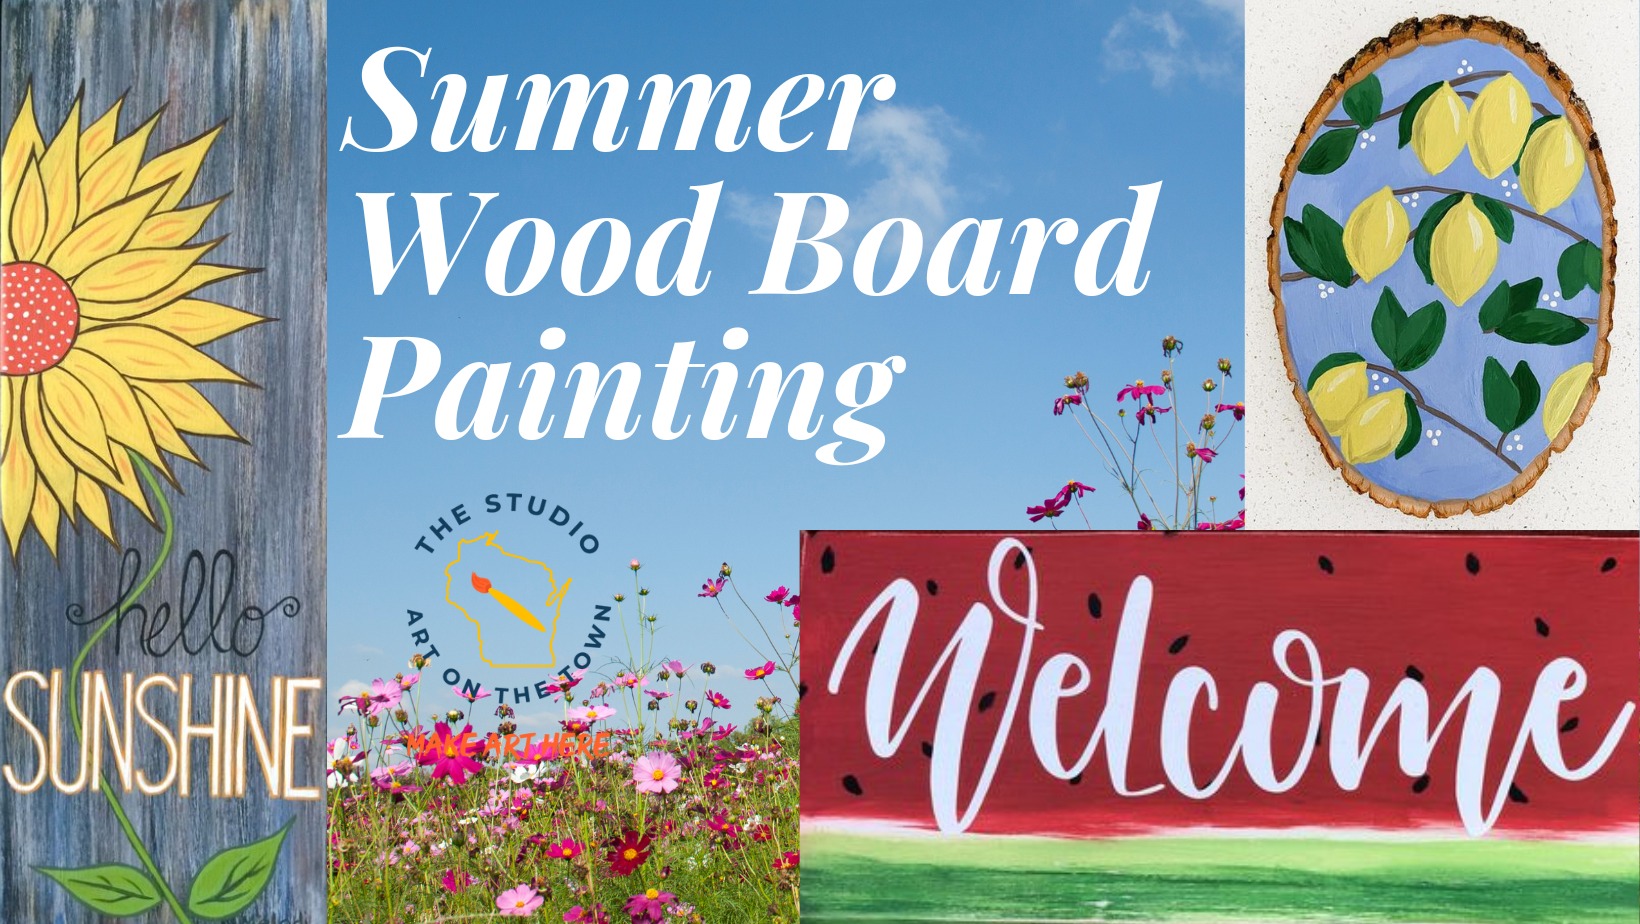 Summer Wood Board Painting Workshop